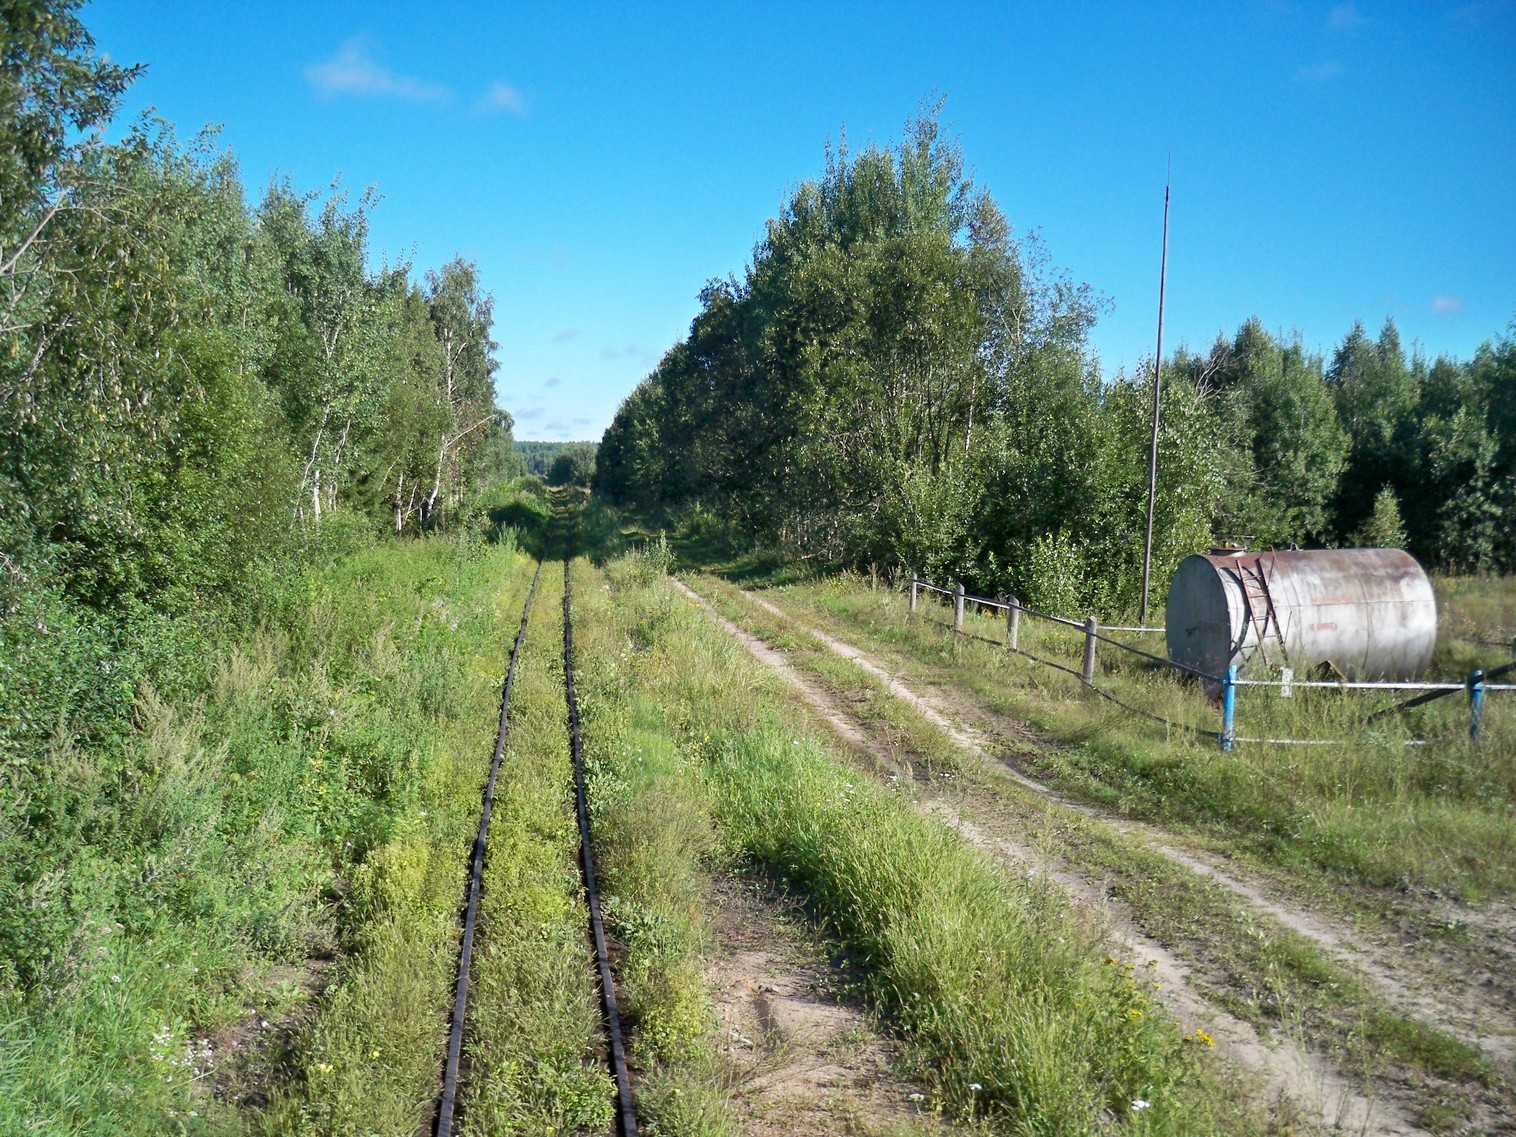 Узкоколейная  железная дорога Нёманского торфопредприятия  —  фотографии, сделанные в 2013 году (часть 5)